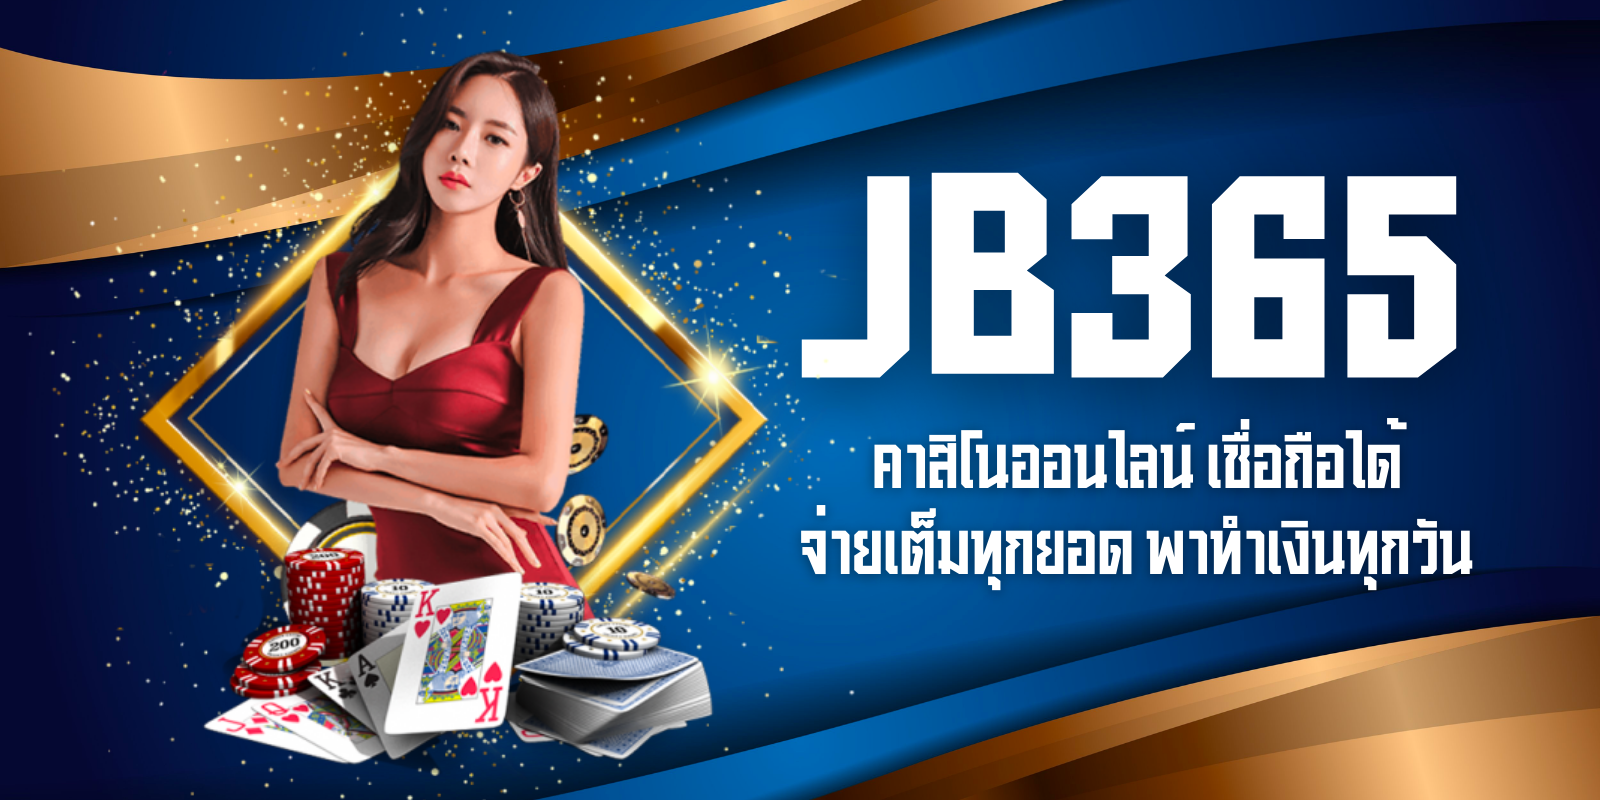 jb365 คาสิโนออนไลน์